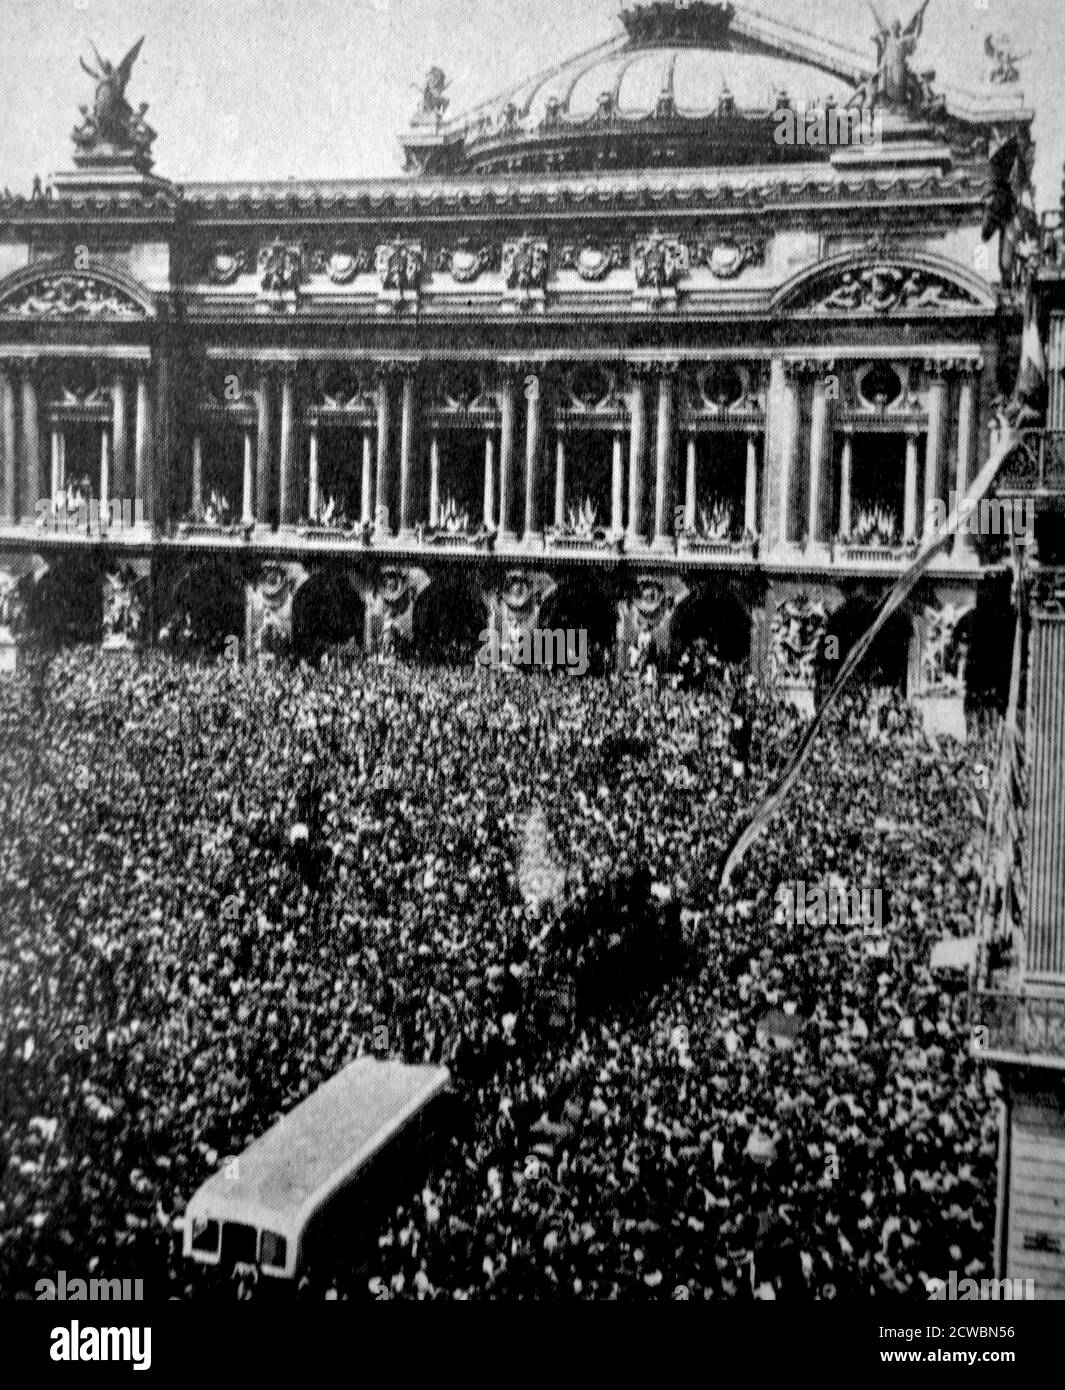 Fotografia in bianco e nero della seconda guerra mondiale (1939-1945) che mostra Parigi in occasione della Giornata della Vittoria in Europa, 8 maggio 1945. Una grande folla di persone si riuniscono in Place de l'Opera nel pomeriggio. Foto Stock